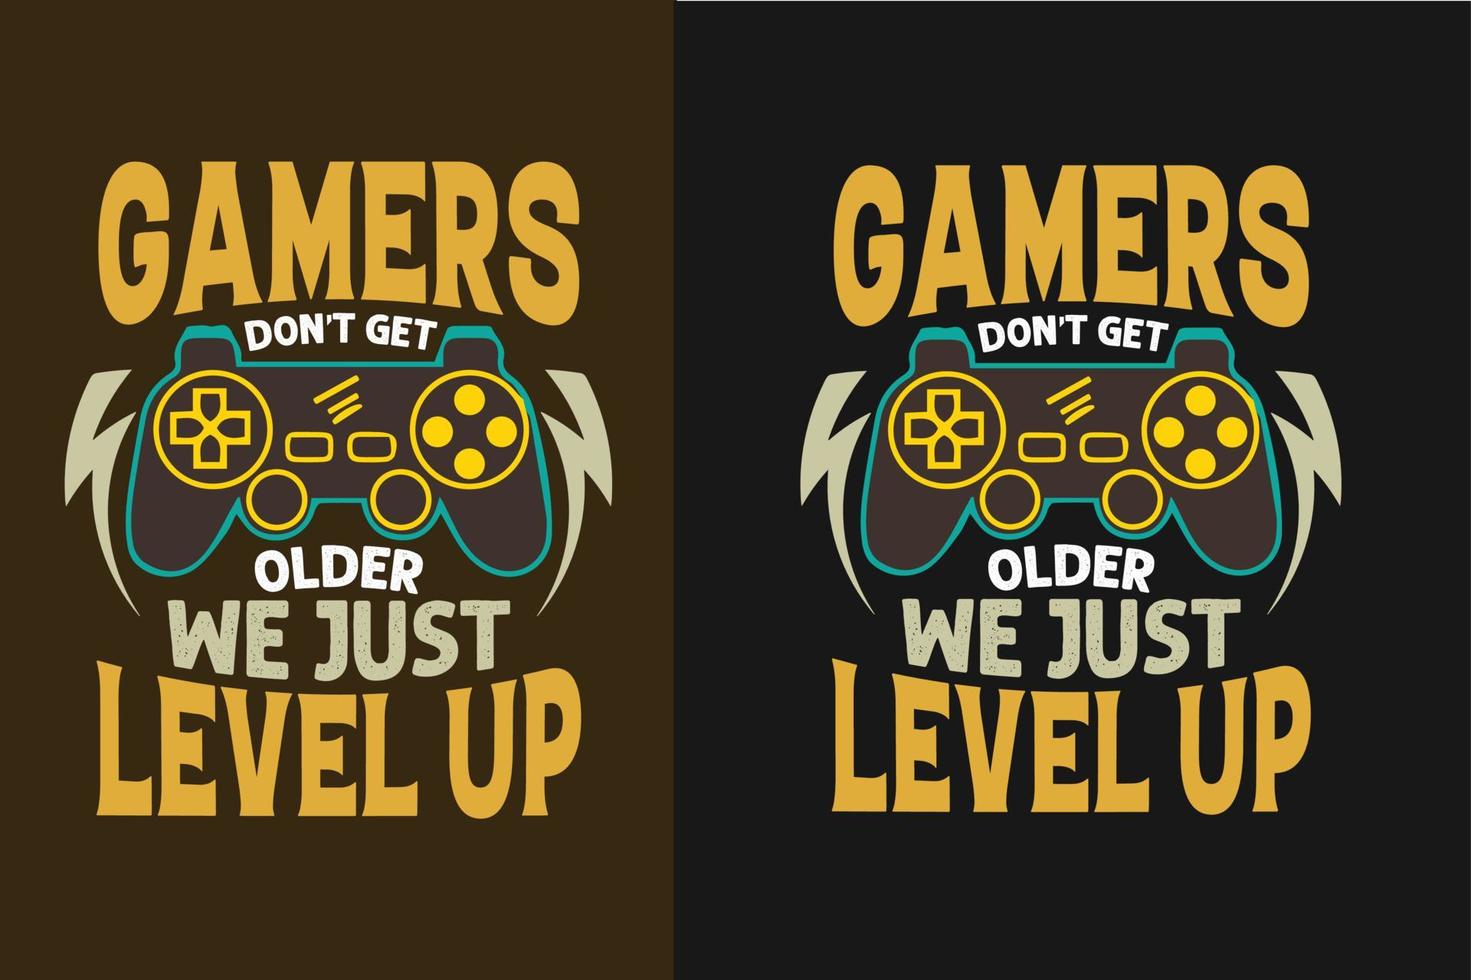 Gamer's don't get older we just level up gaming t shirt design vector